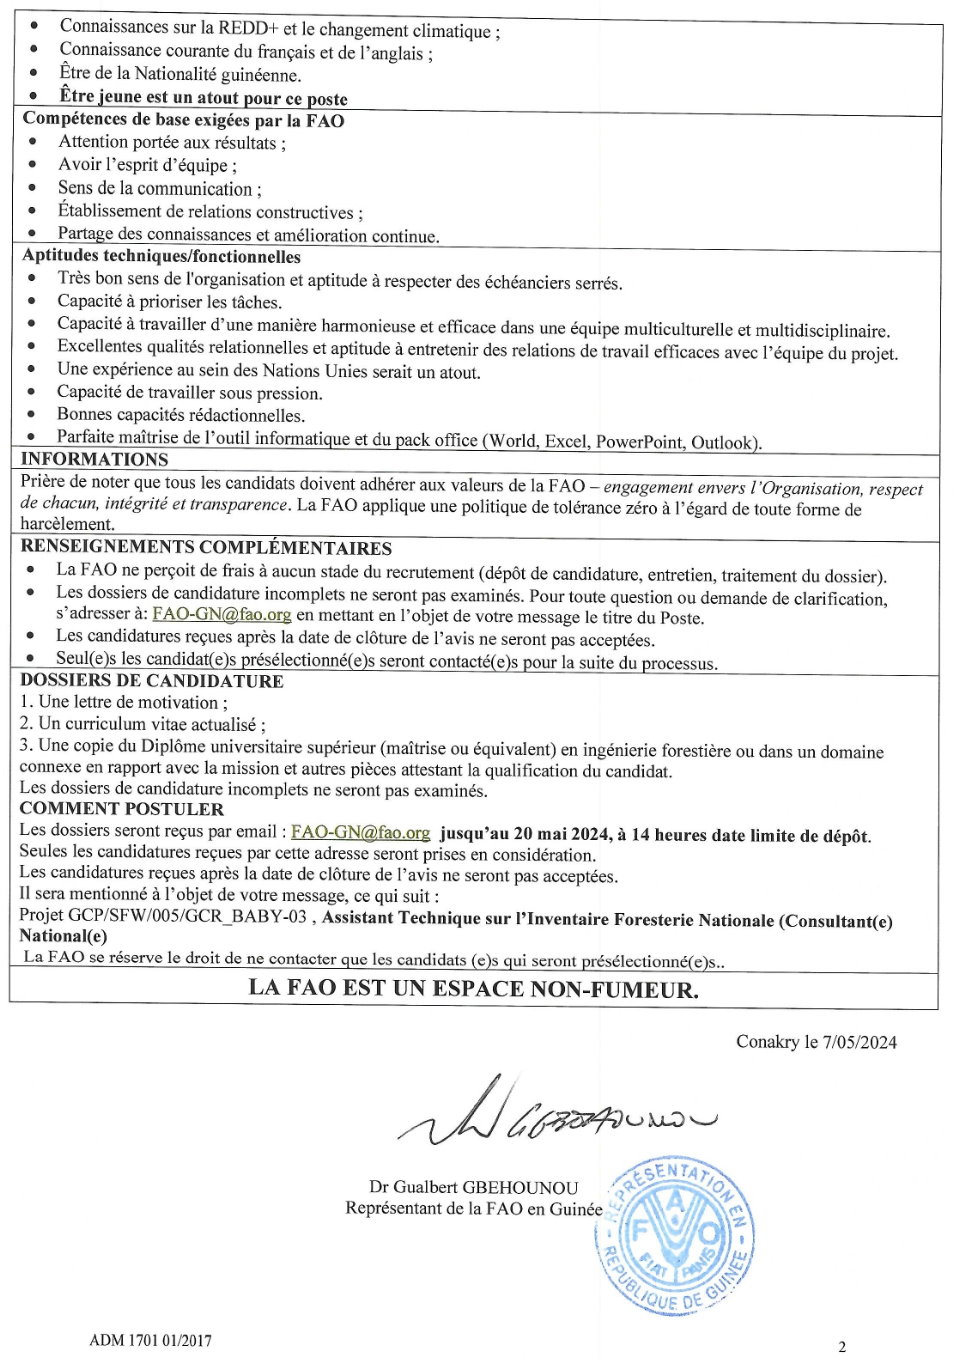 Avis de recrutement d'un Assistant Technique sur l’Inventaire Foresterie Nationale (Consultant(e) National(e) | Page 2